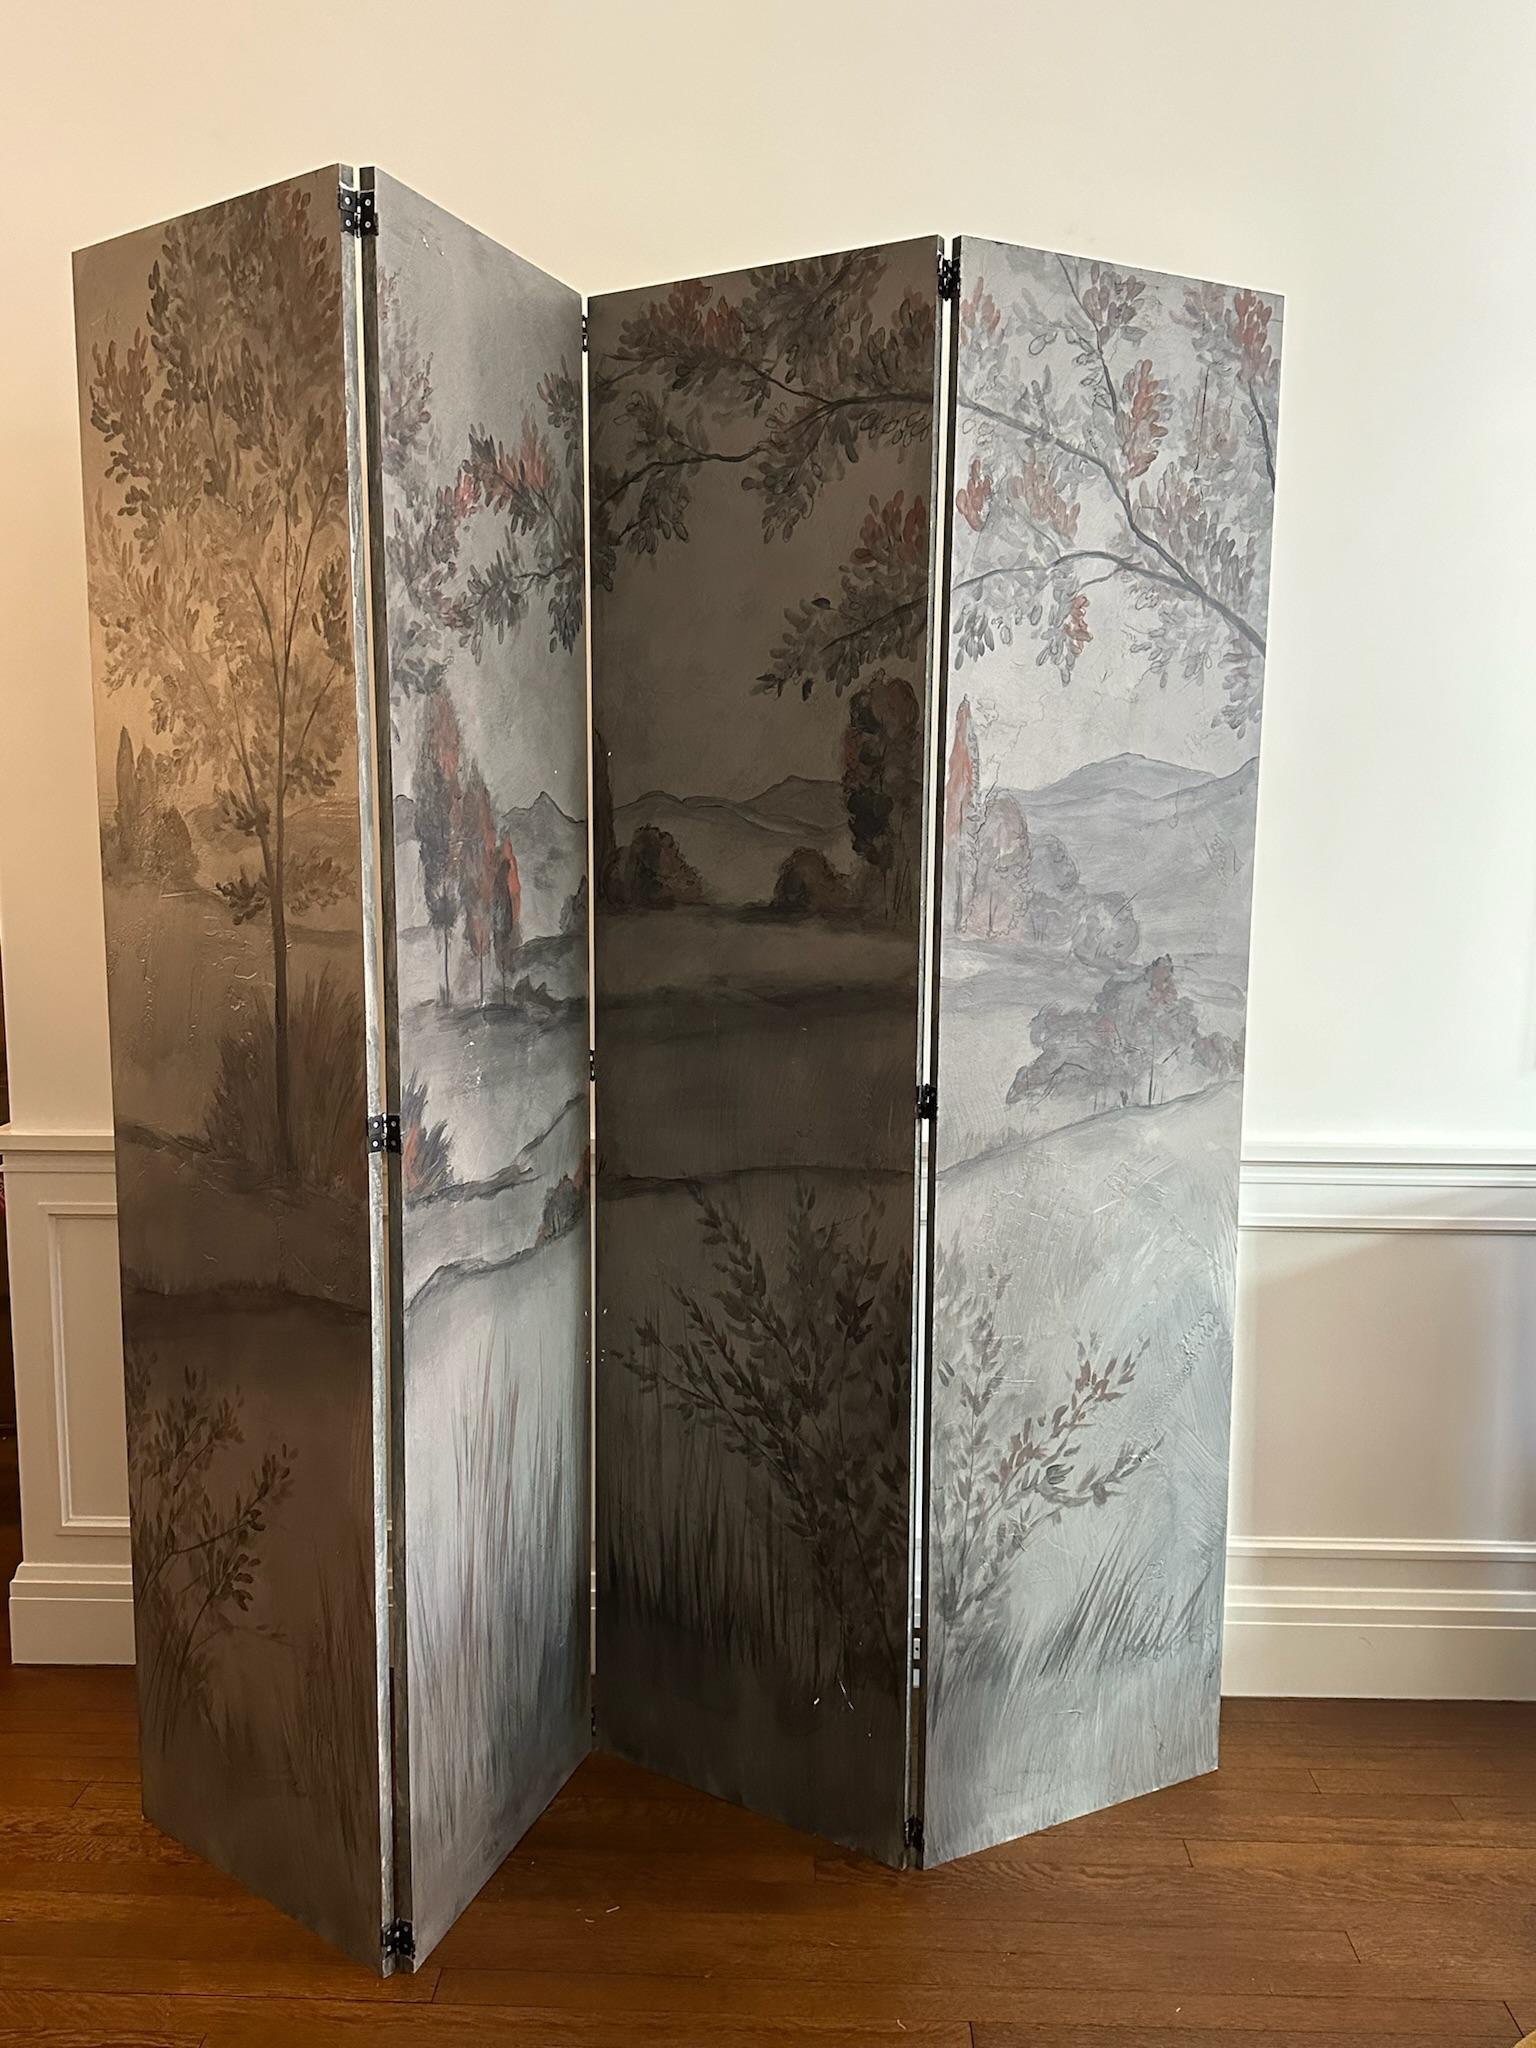 Dieser Paravent besteht aus vier Paneelen, deren Struktur aus Holz besteht und durch Metallscharniere miteinander verbunden sind. Die Tafeln sind mit einer von James Mobley in Los Angeles gemalten Landschaft bedeckt.